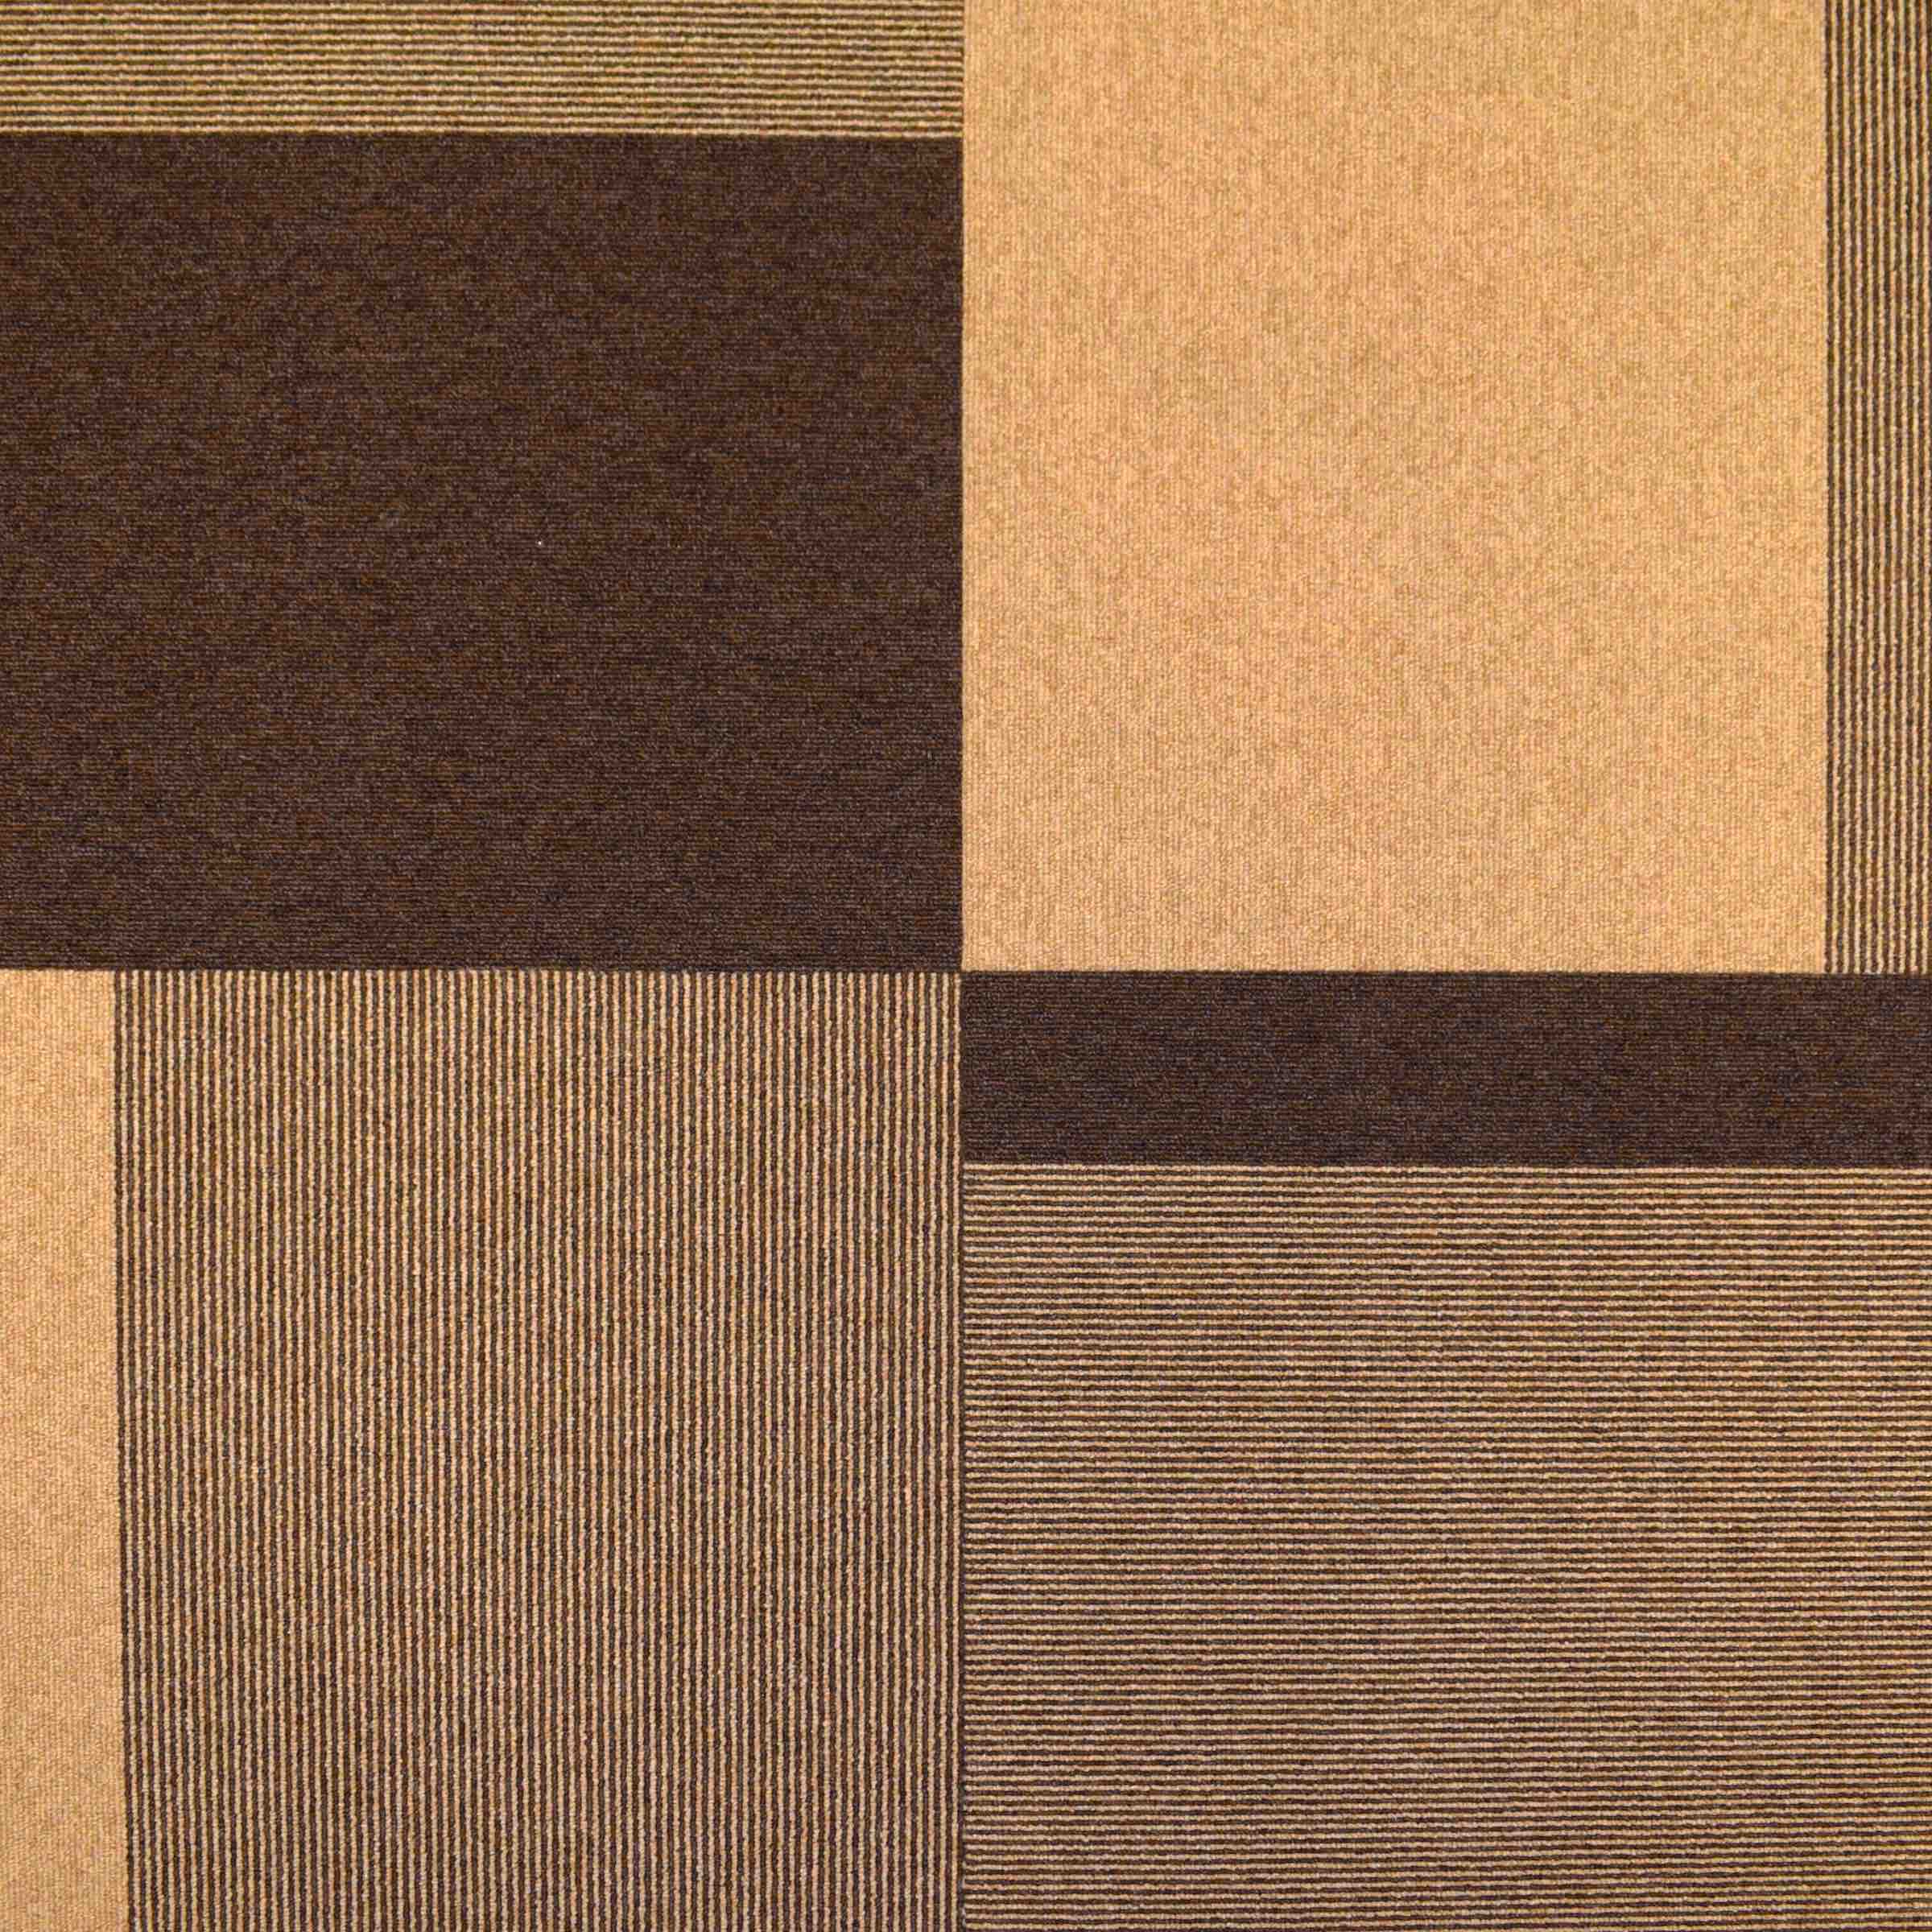 Total Contrast | Mellow Bark | Paragon Carpet Tiles | Commercial Carpet Tiles